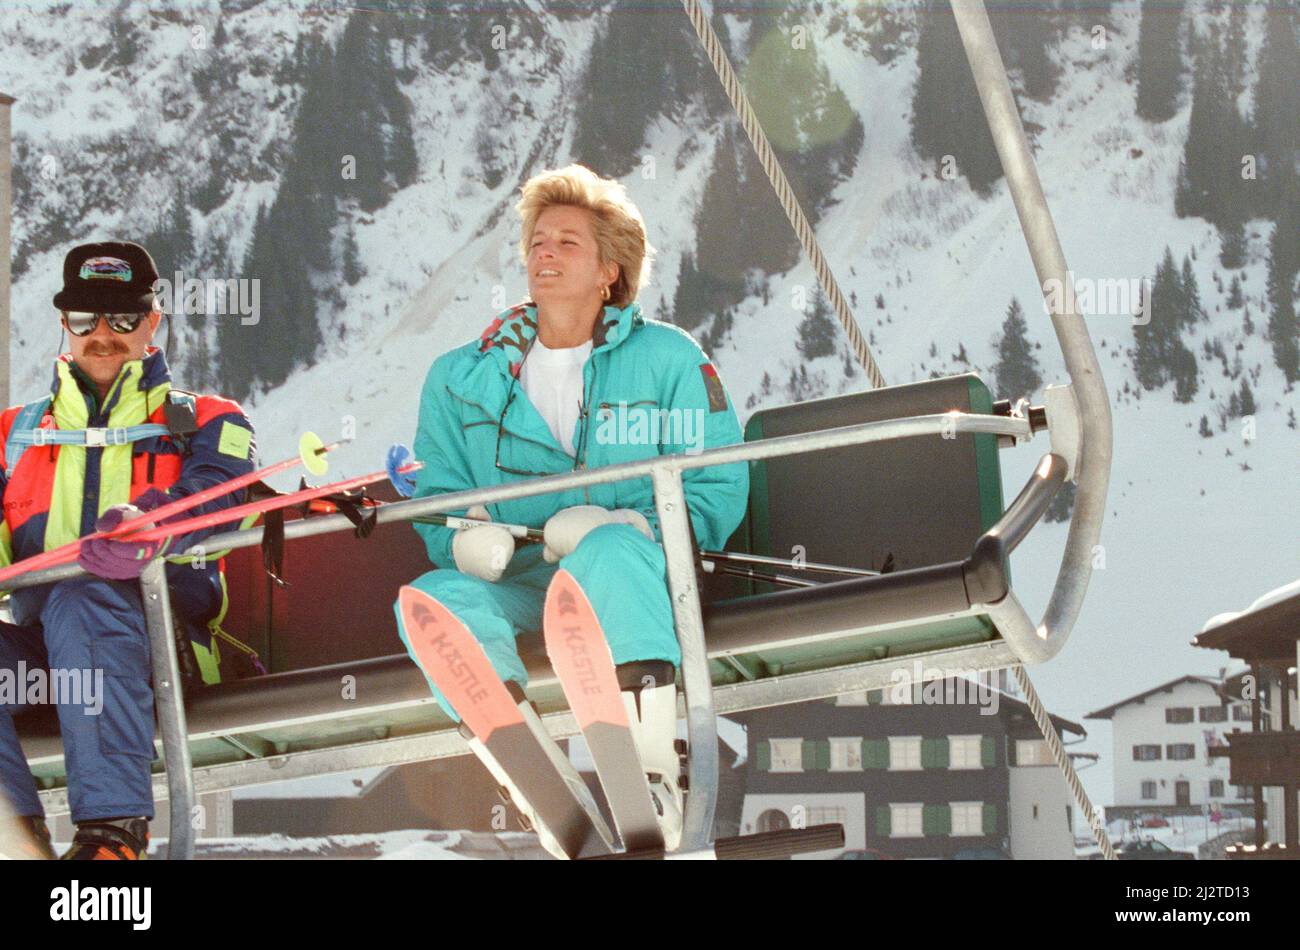 Ihre Königliche Hoheit Prinzessin Diana, die Prinzessin von Wales, genießt einen Skiurlaub in Lech, Österreich. Prinz William und Prinz Harry begleiten sie auf ihrer Reise. Bild aufgenommen am 1.. April 1993 Stockfoto